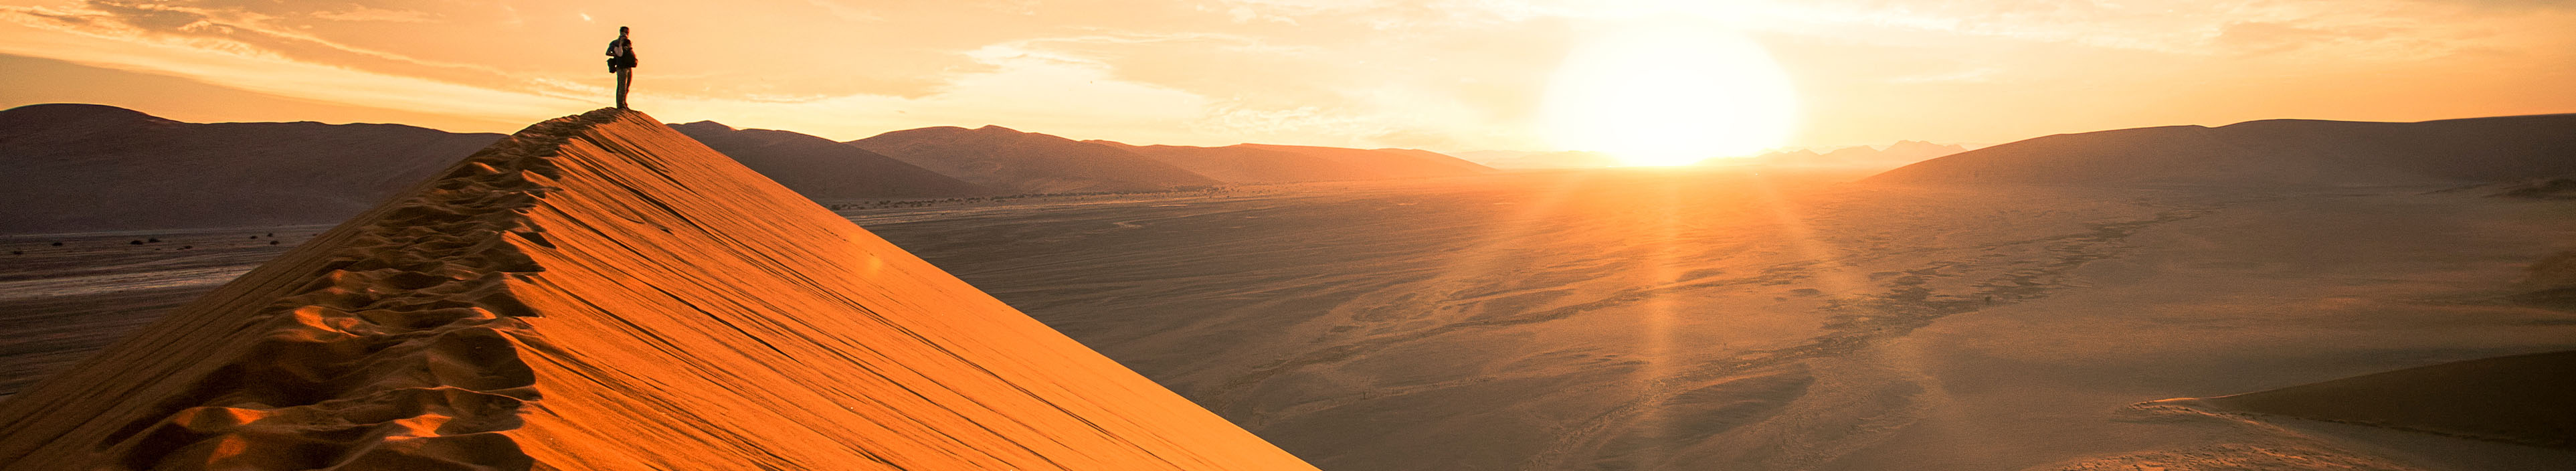 Ein Tourist steht auf einer großen Düne, bei Sonnenaufgang in Namibia.